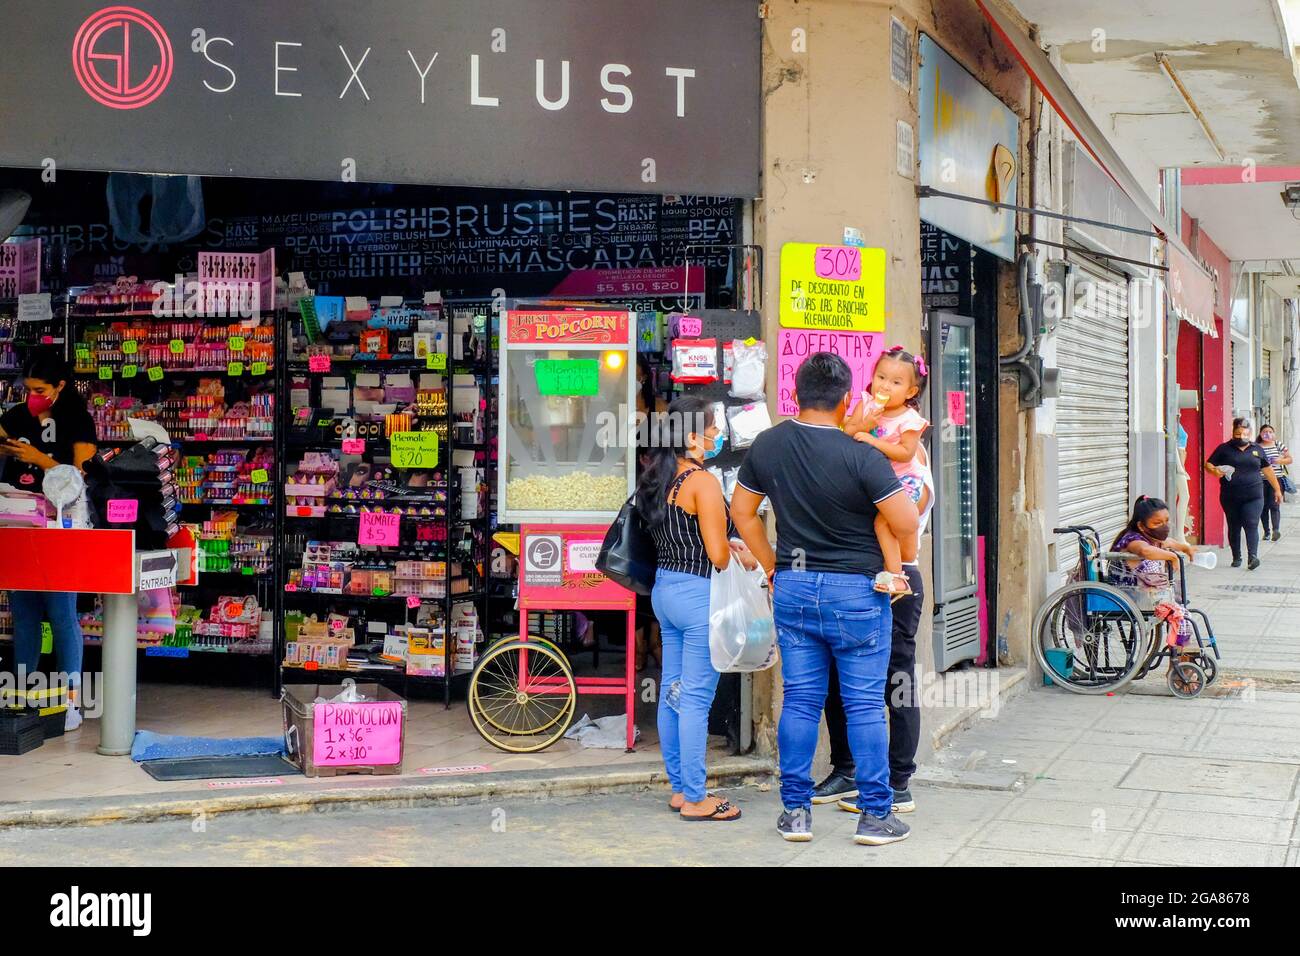 Les gens magasinent dans un centre-ville où de nombreux magasins restent fermés et où la crise économique se fait sentir (en raison de la pandémie mondiale de Covid-19) Merida, Mexique Banque D'Images